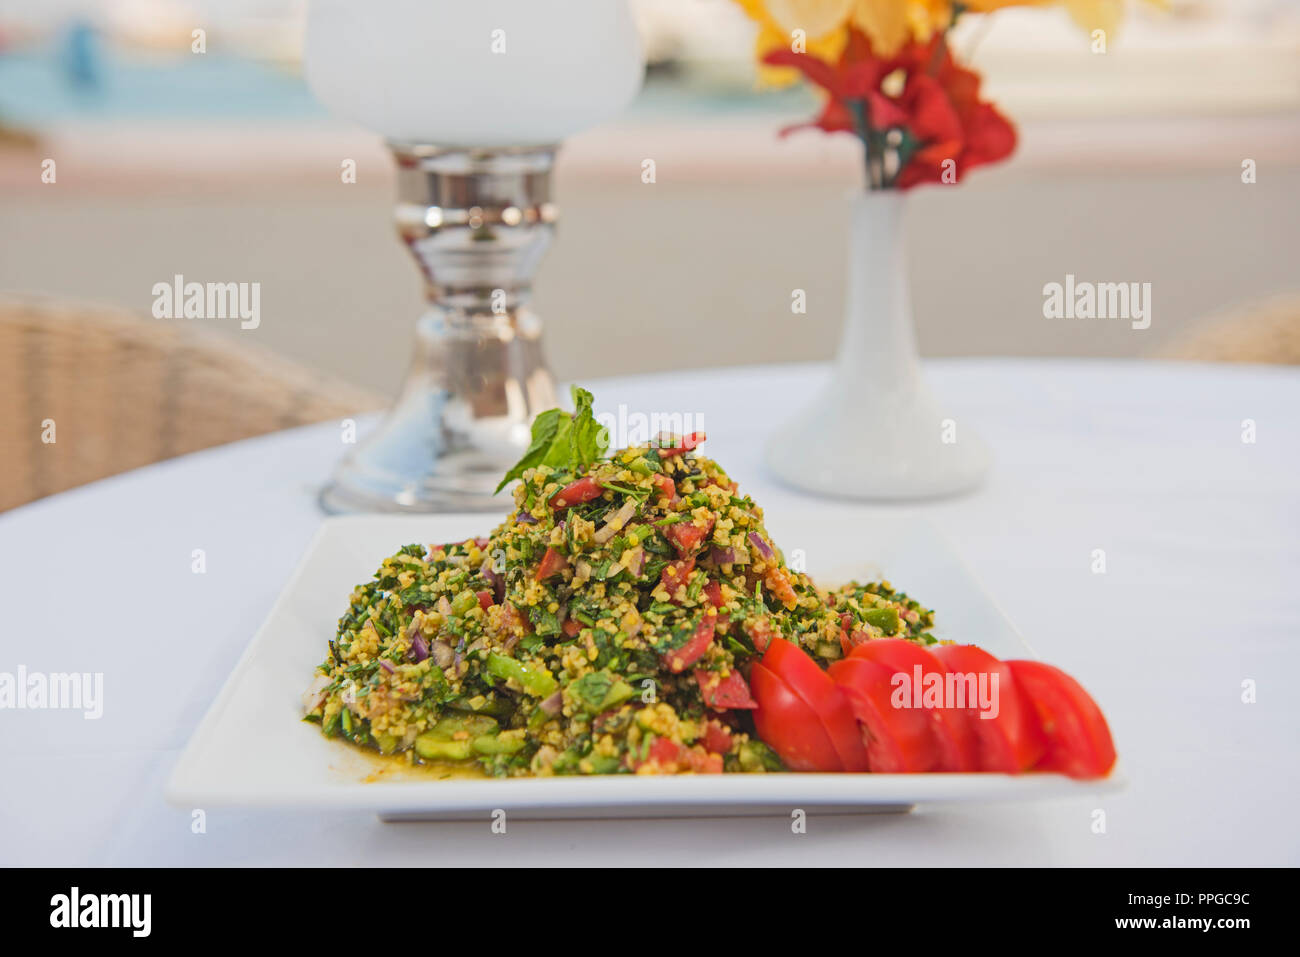 Couscous végétarien végétalien sain repas au restaurant à la tomate on white plate Banque D'Images